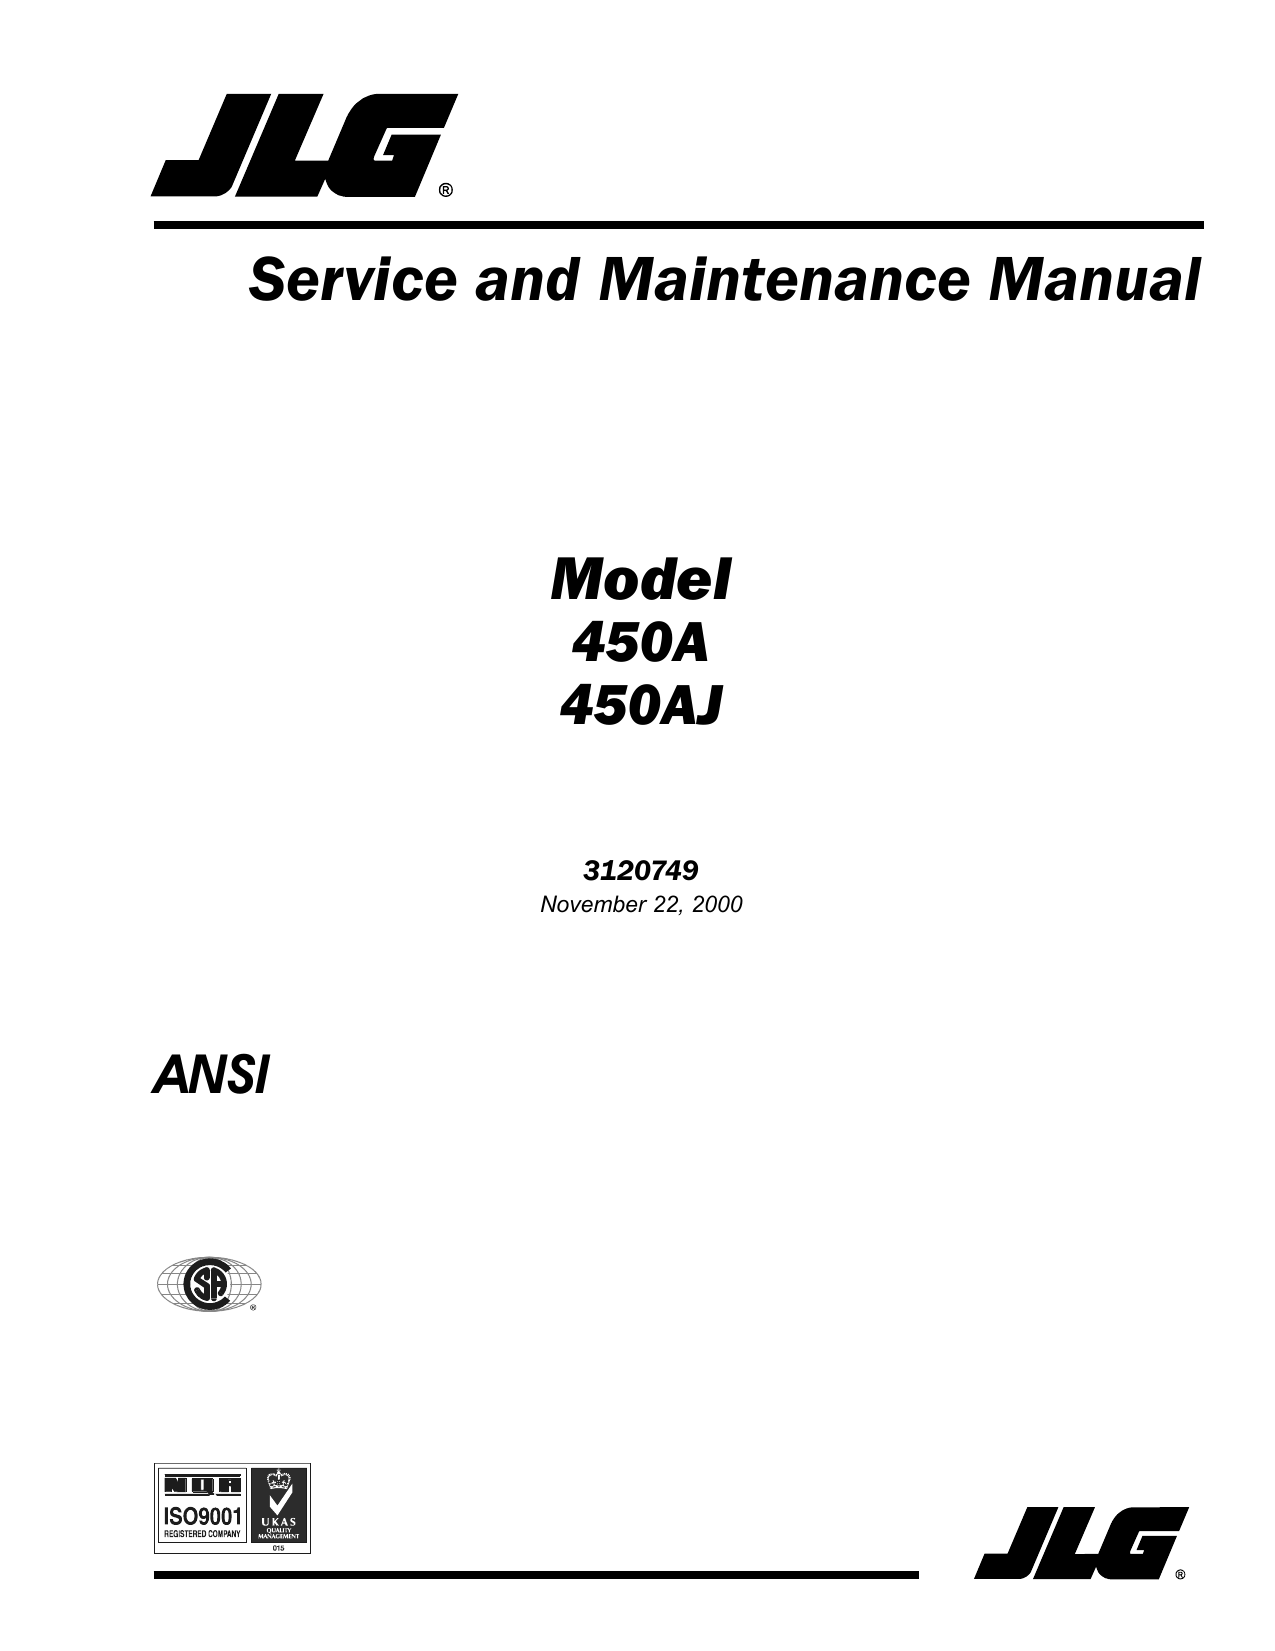 JLG-Service Manual-Parts Manual-Operators Manual-Electrical Schematic-All Models